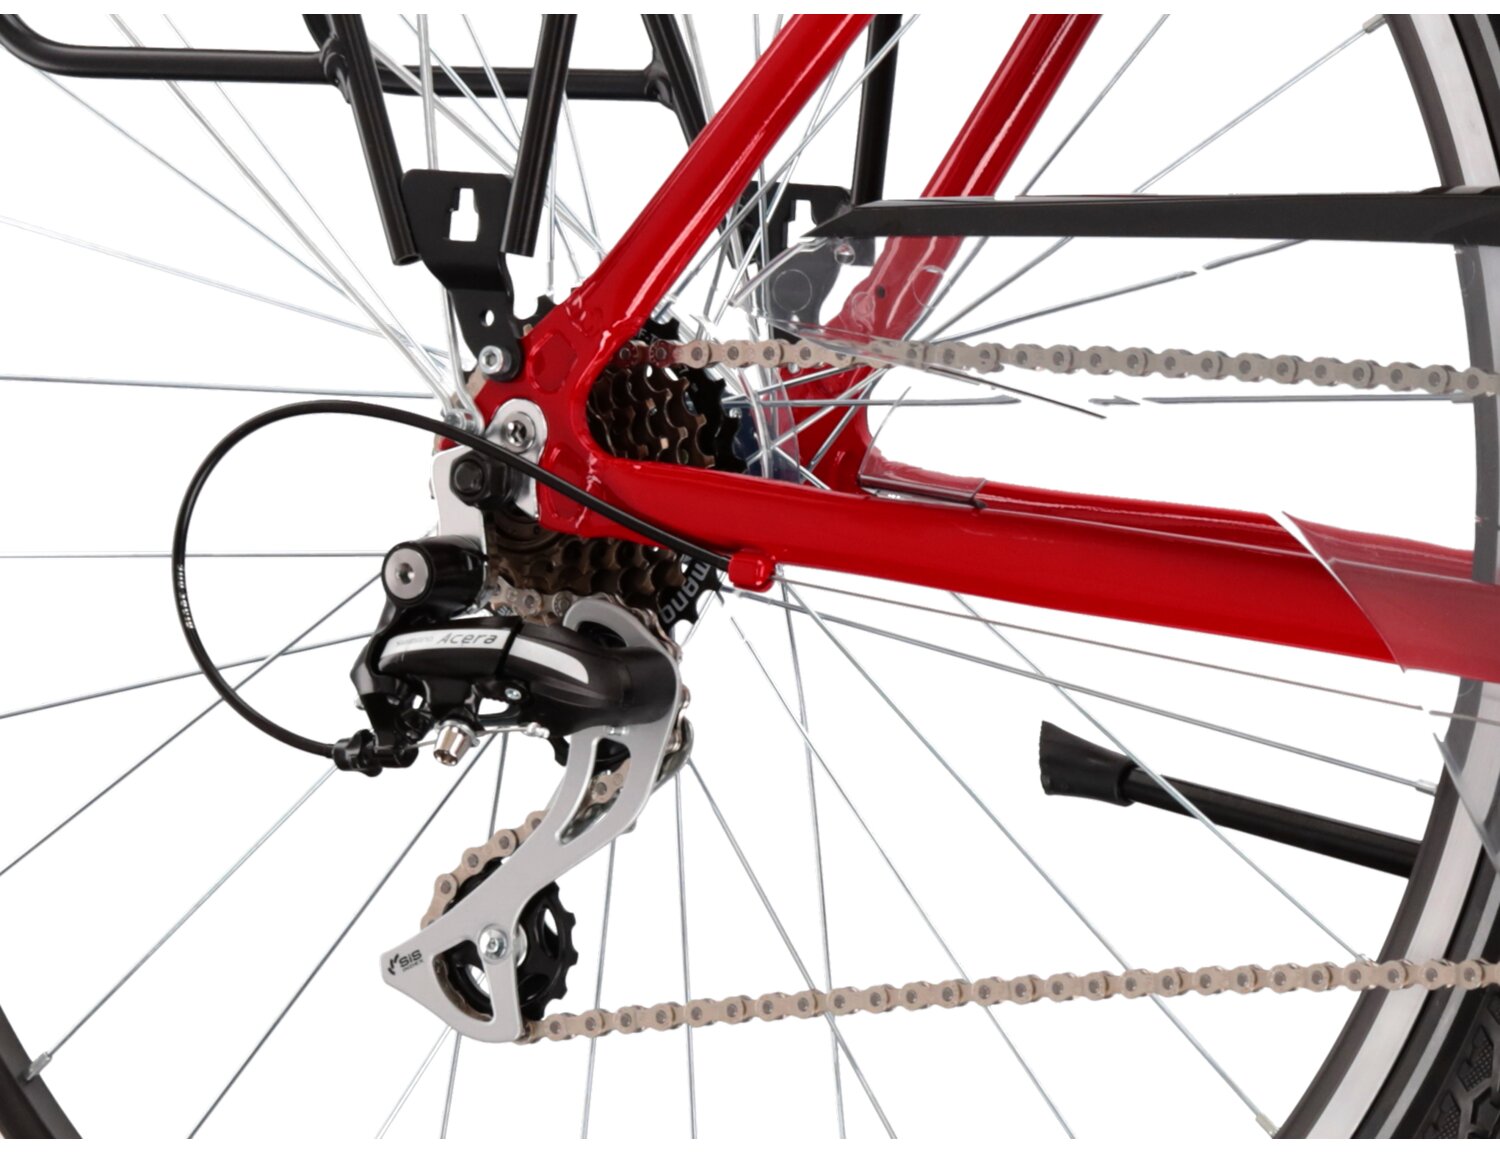  Tylna siedmiobiegowa przerzutka Shimano Acera M3020 oraz hamulce v-brake w rowerze trekkingowym KROSS Trans 3.0 